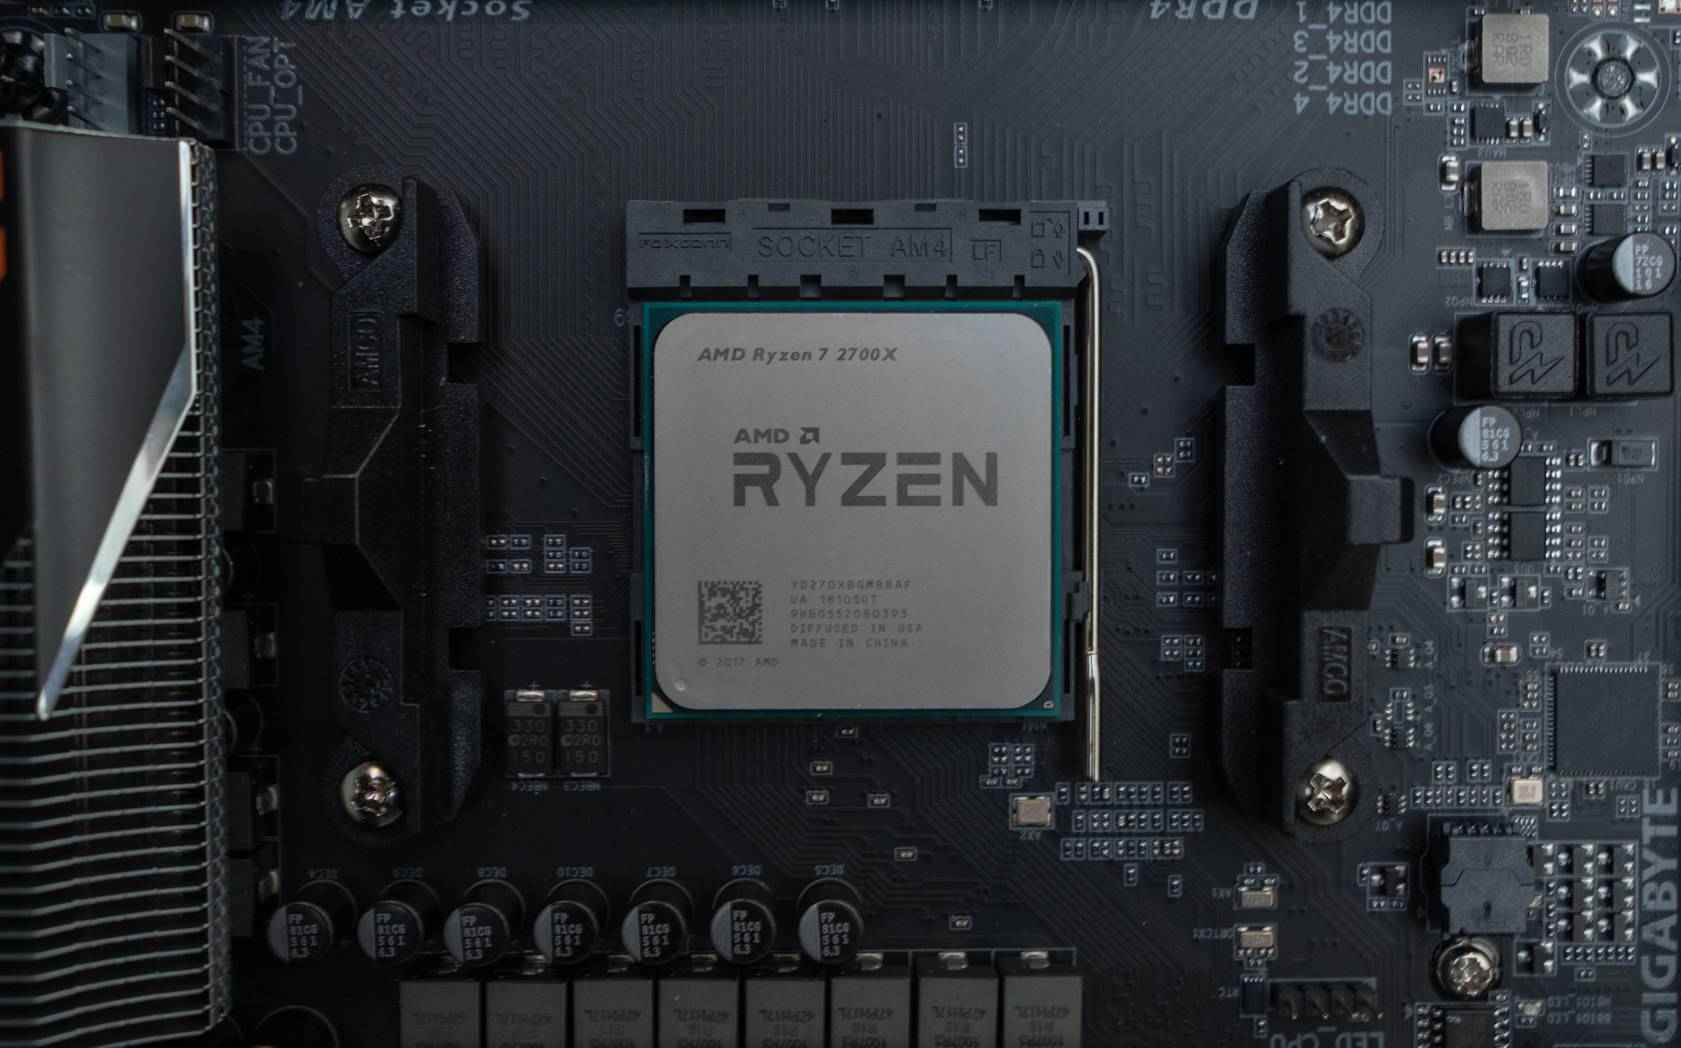 best motherboard for amd ryzen 7 2700x